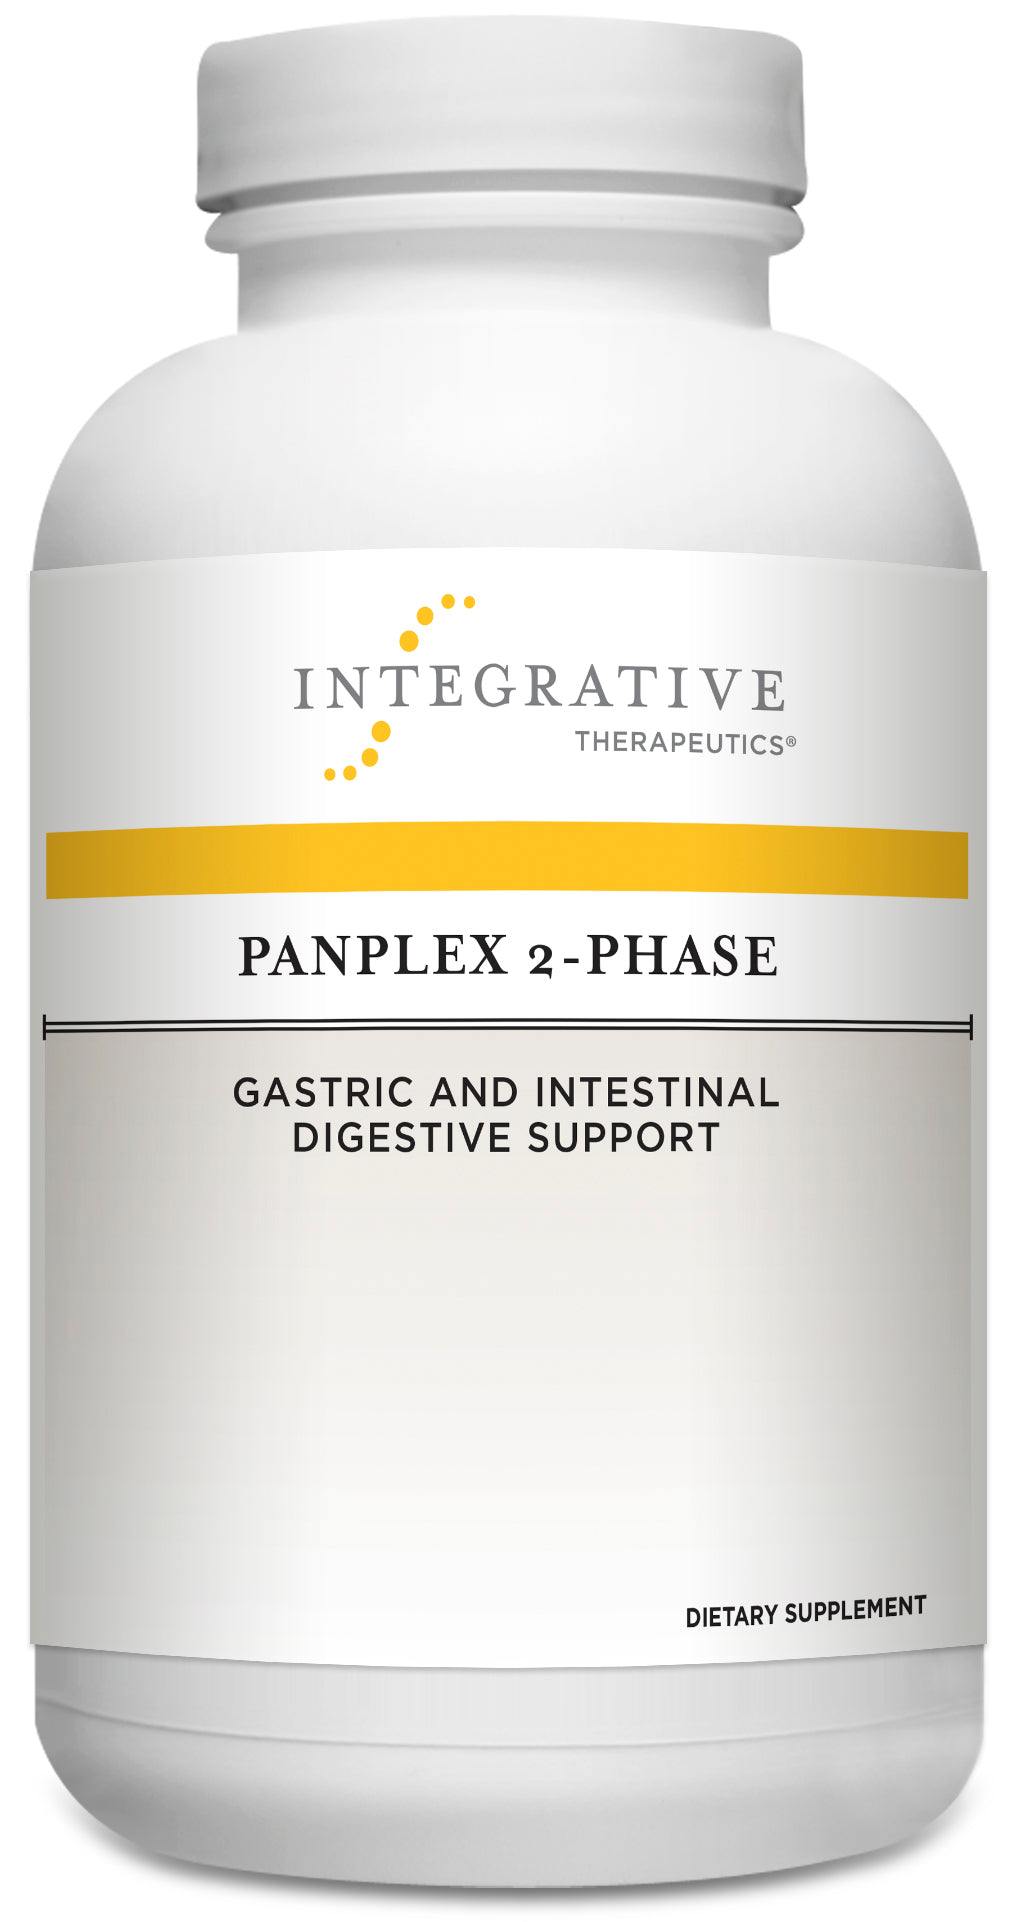 Panplex 2-Phase